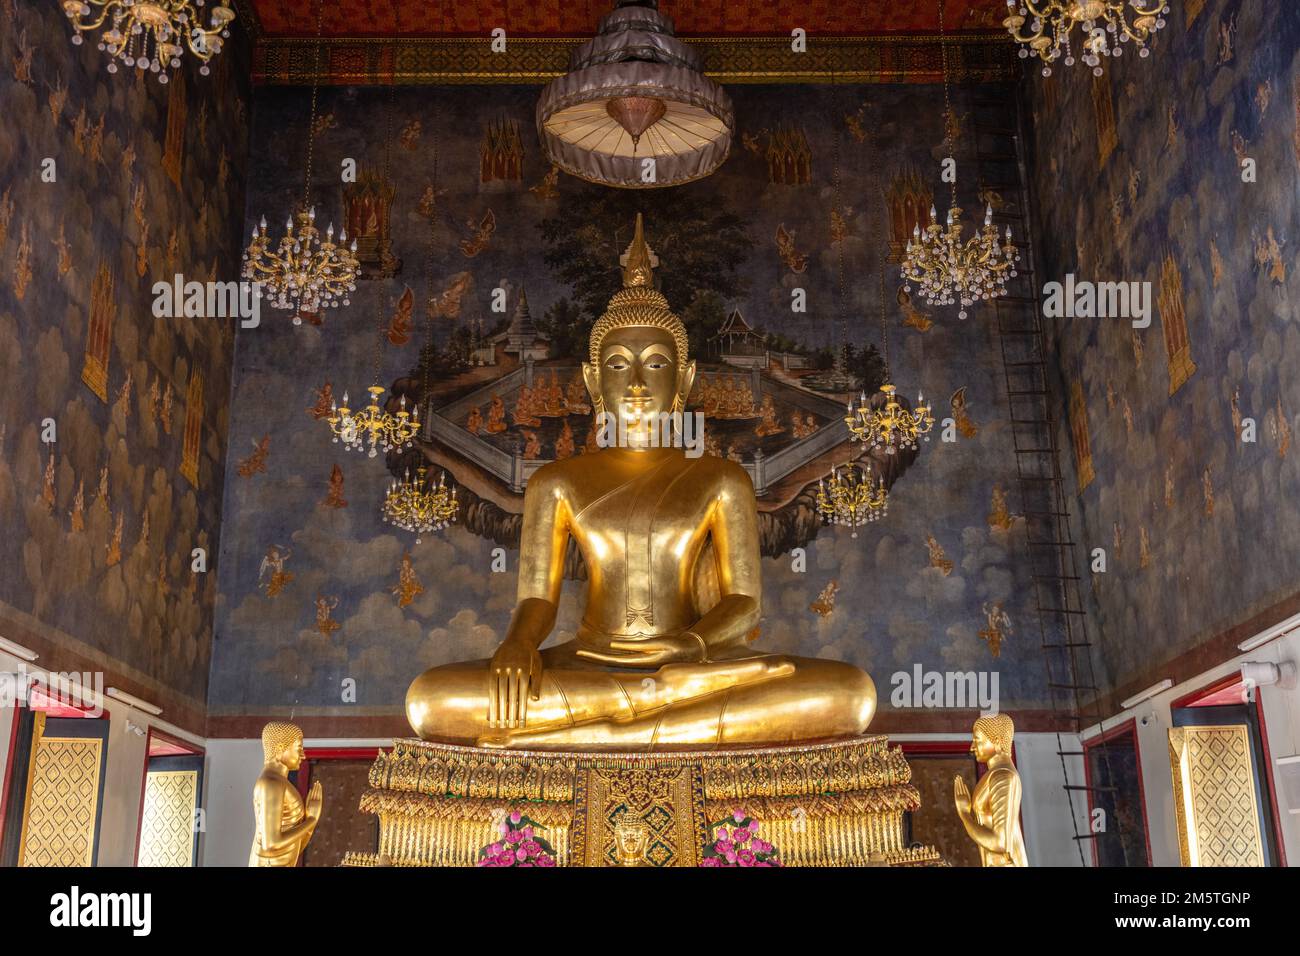 Sitzplätze für Maravijaya Buddha-Statuen in Ubosot (Ordnungshalle) von Wat Ratchanatdaram Woravihara, buddhistischer Tempel in Bangkok, Thailand. Stockfoto